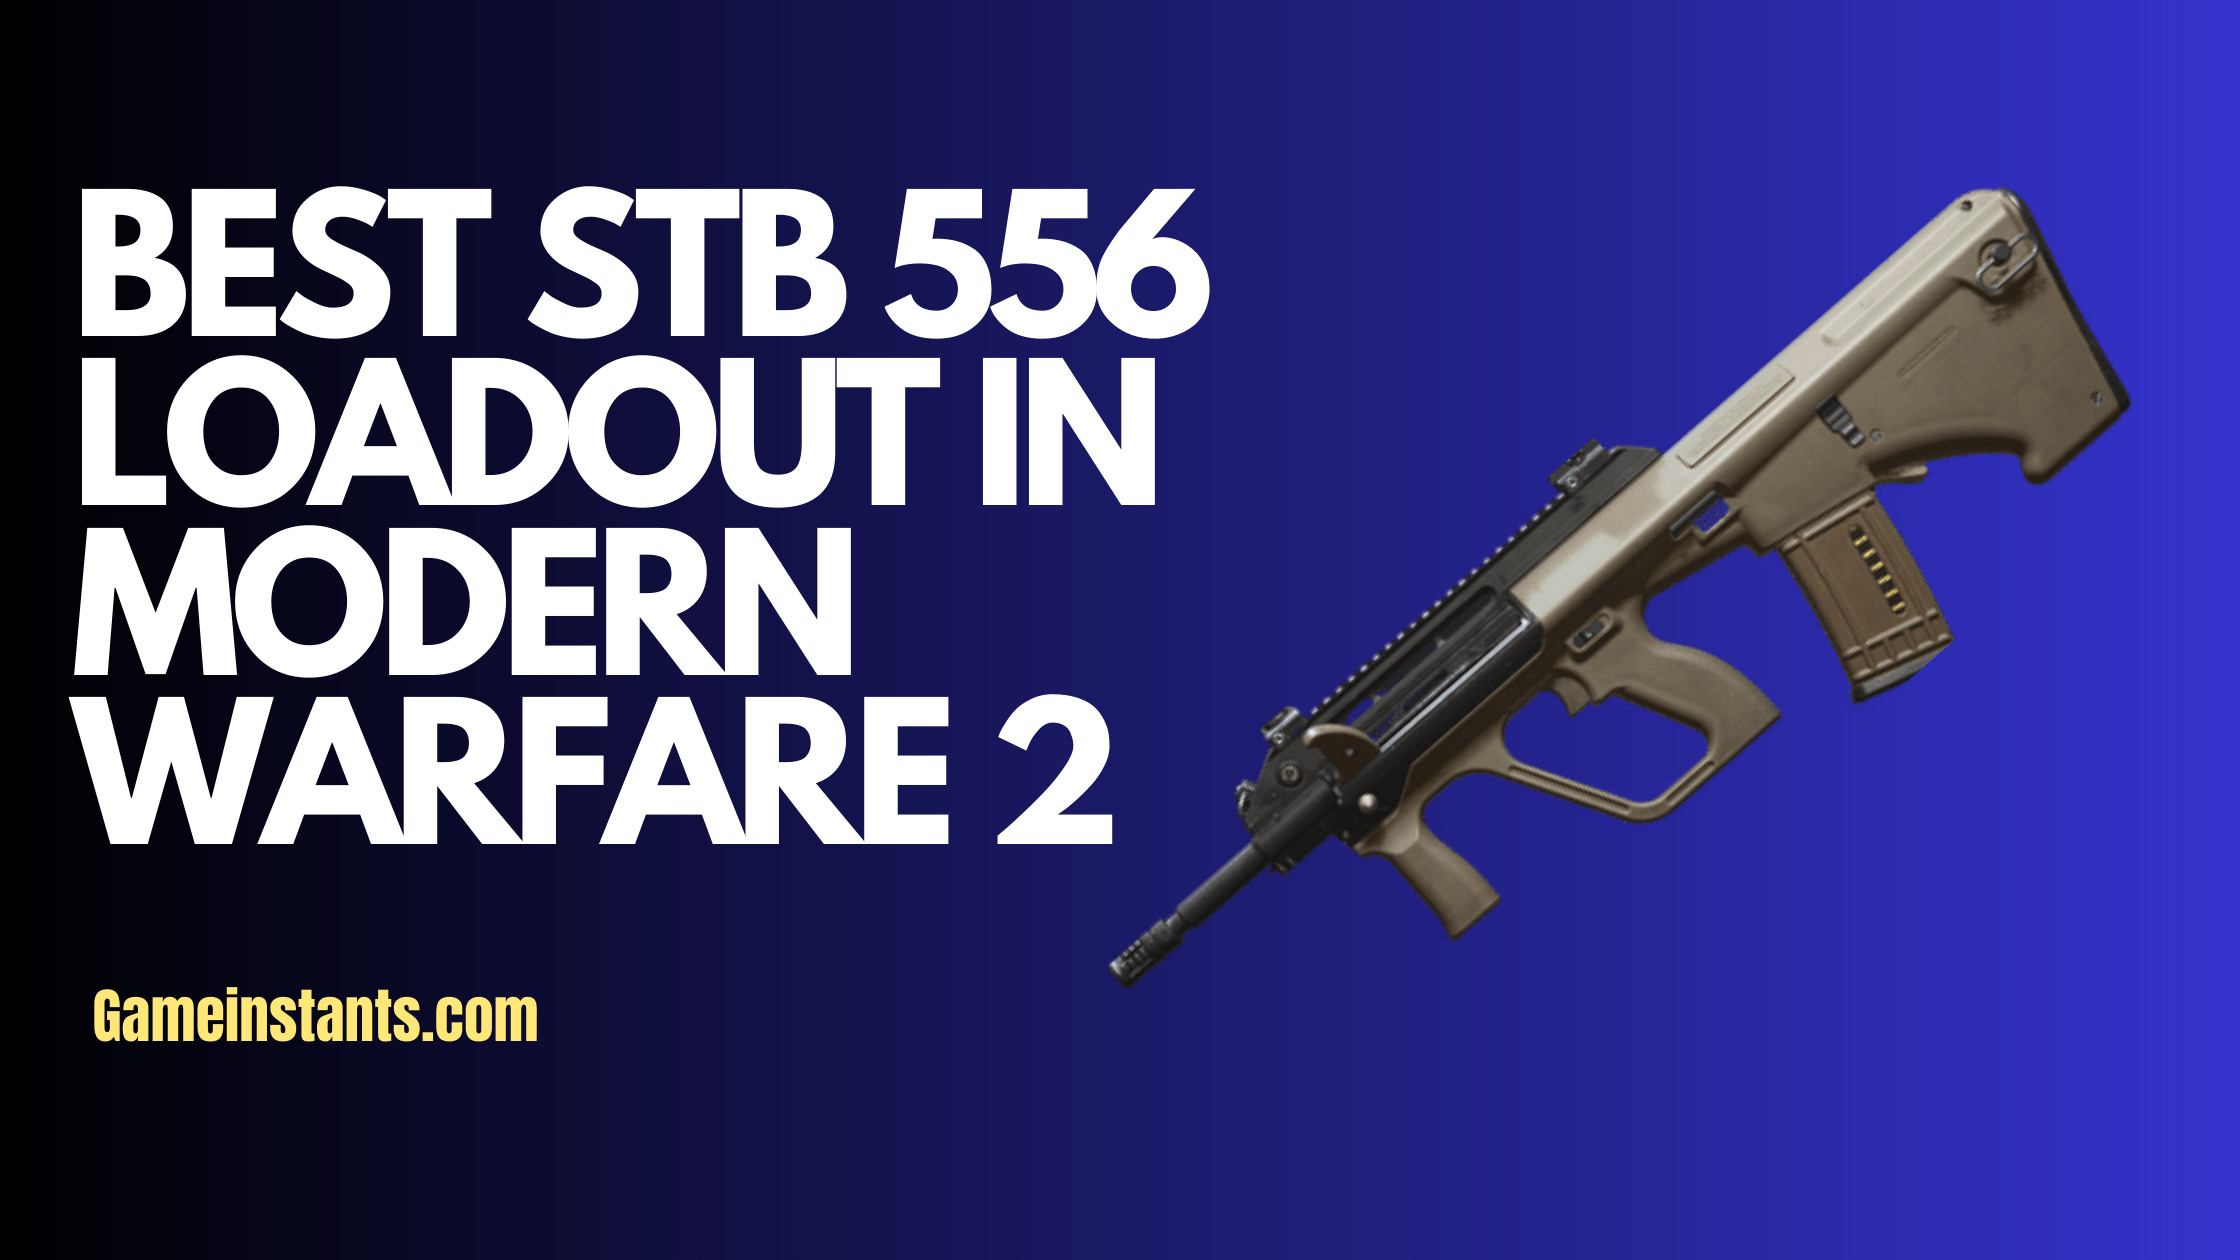 Best STB 556 Loadout Modern Warfare 2